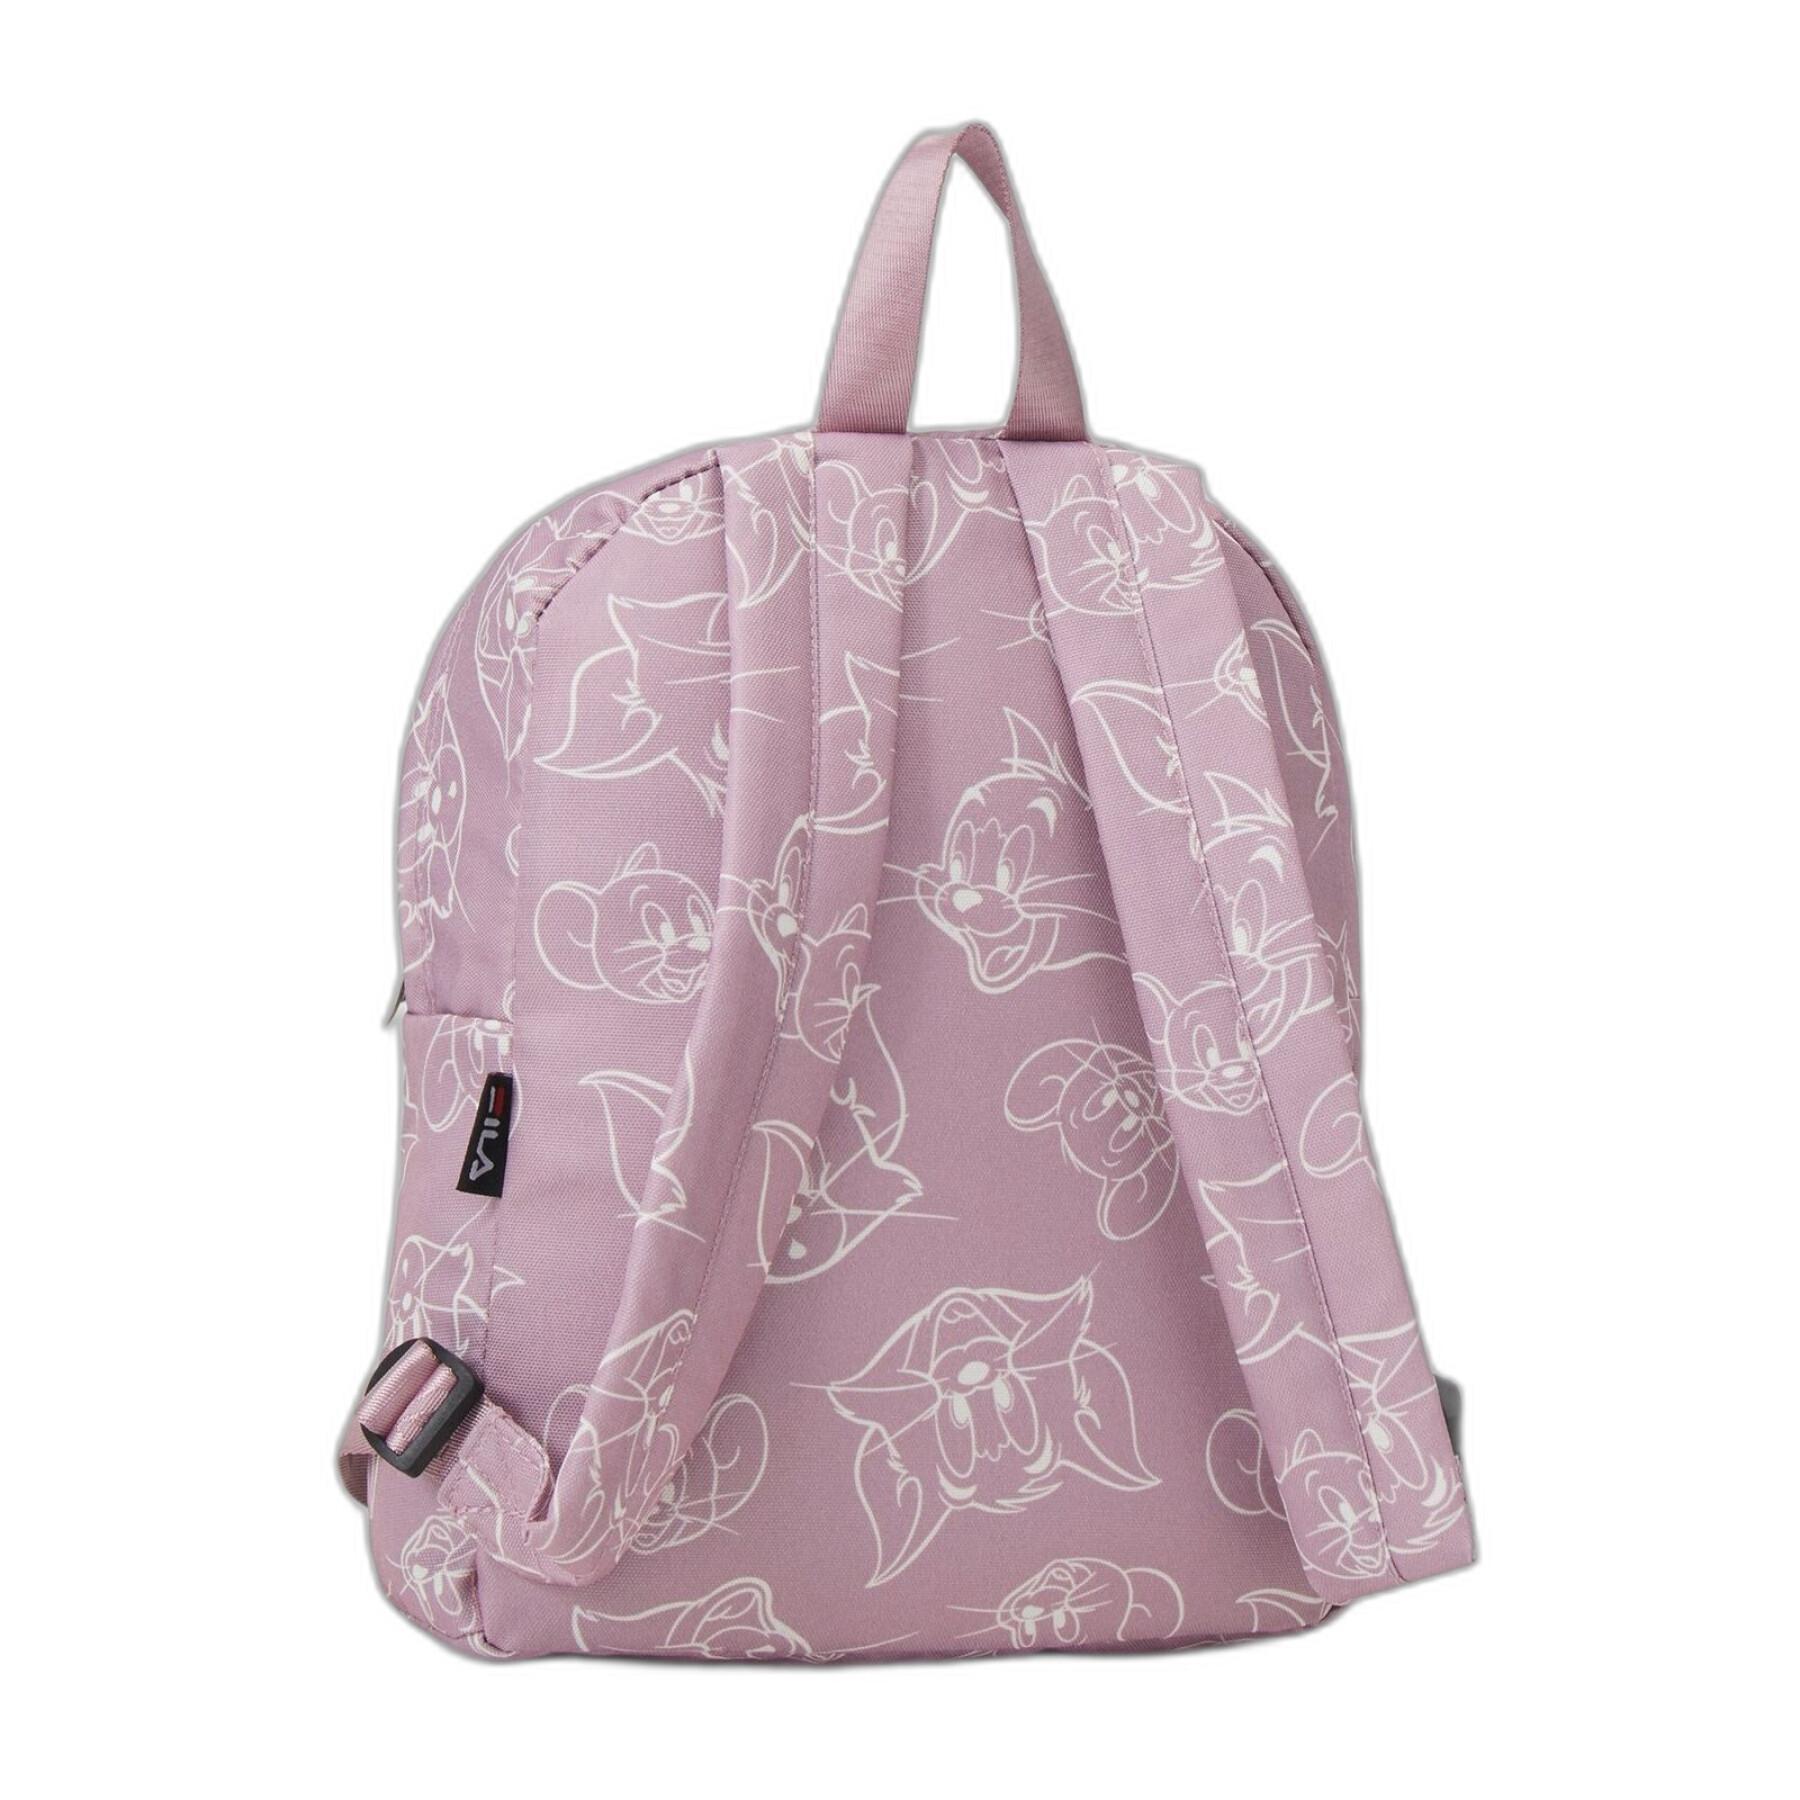 Mini backpack for kids Fila Tisina Warner Bros Malmo